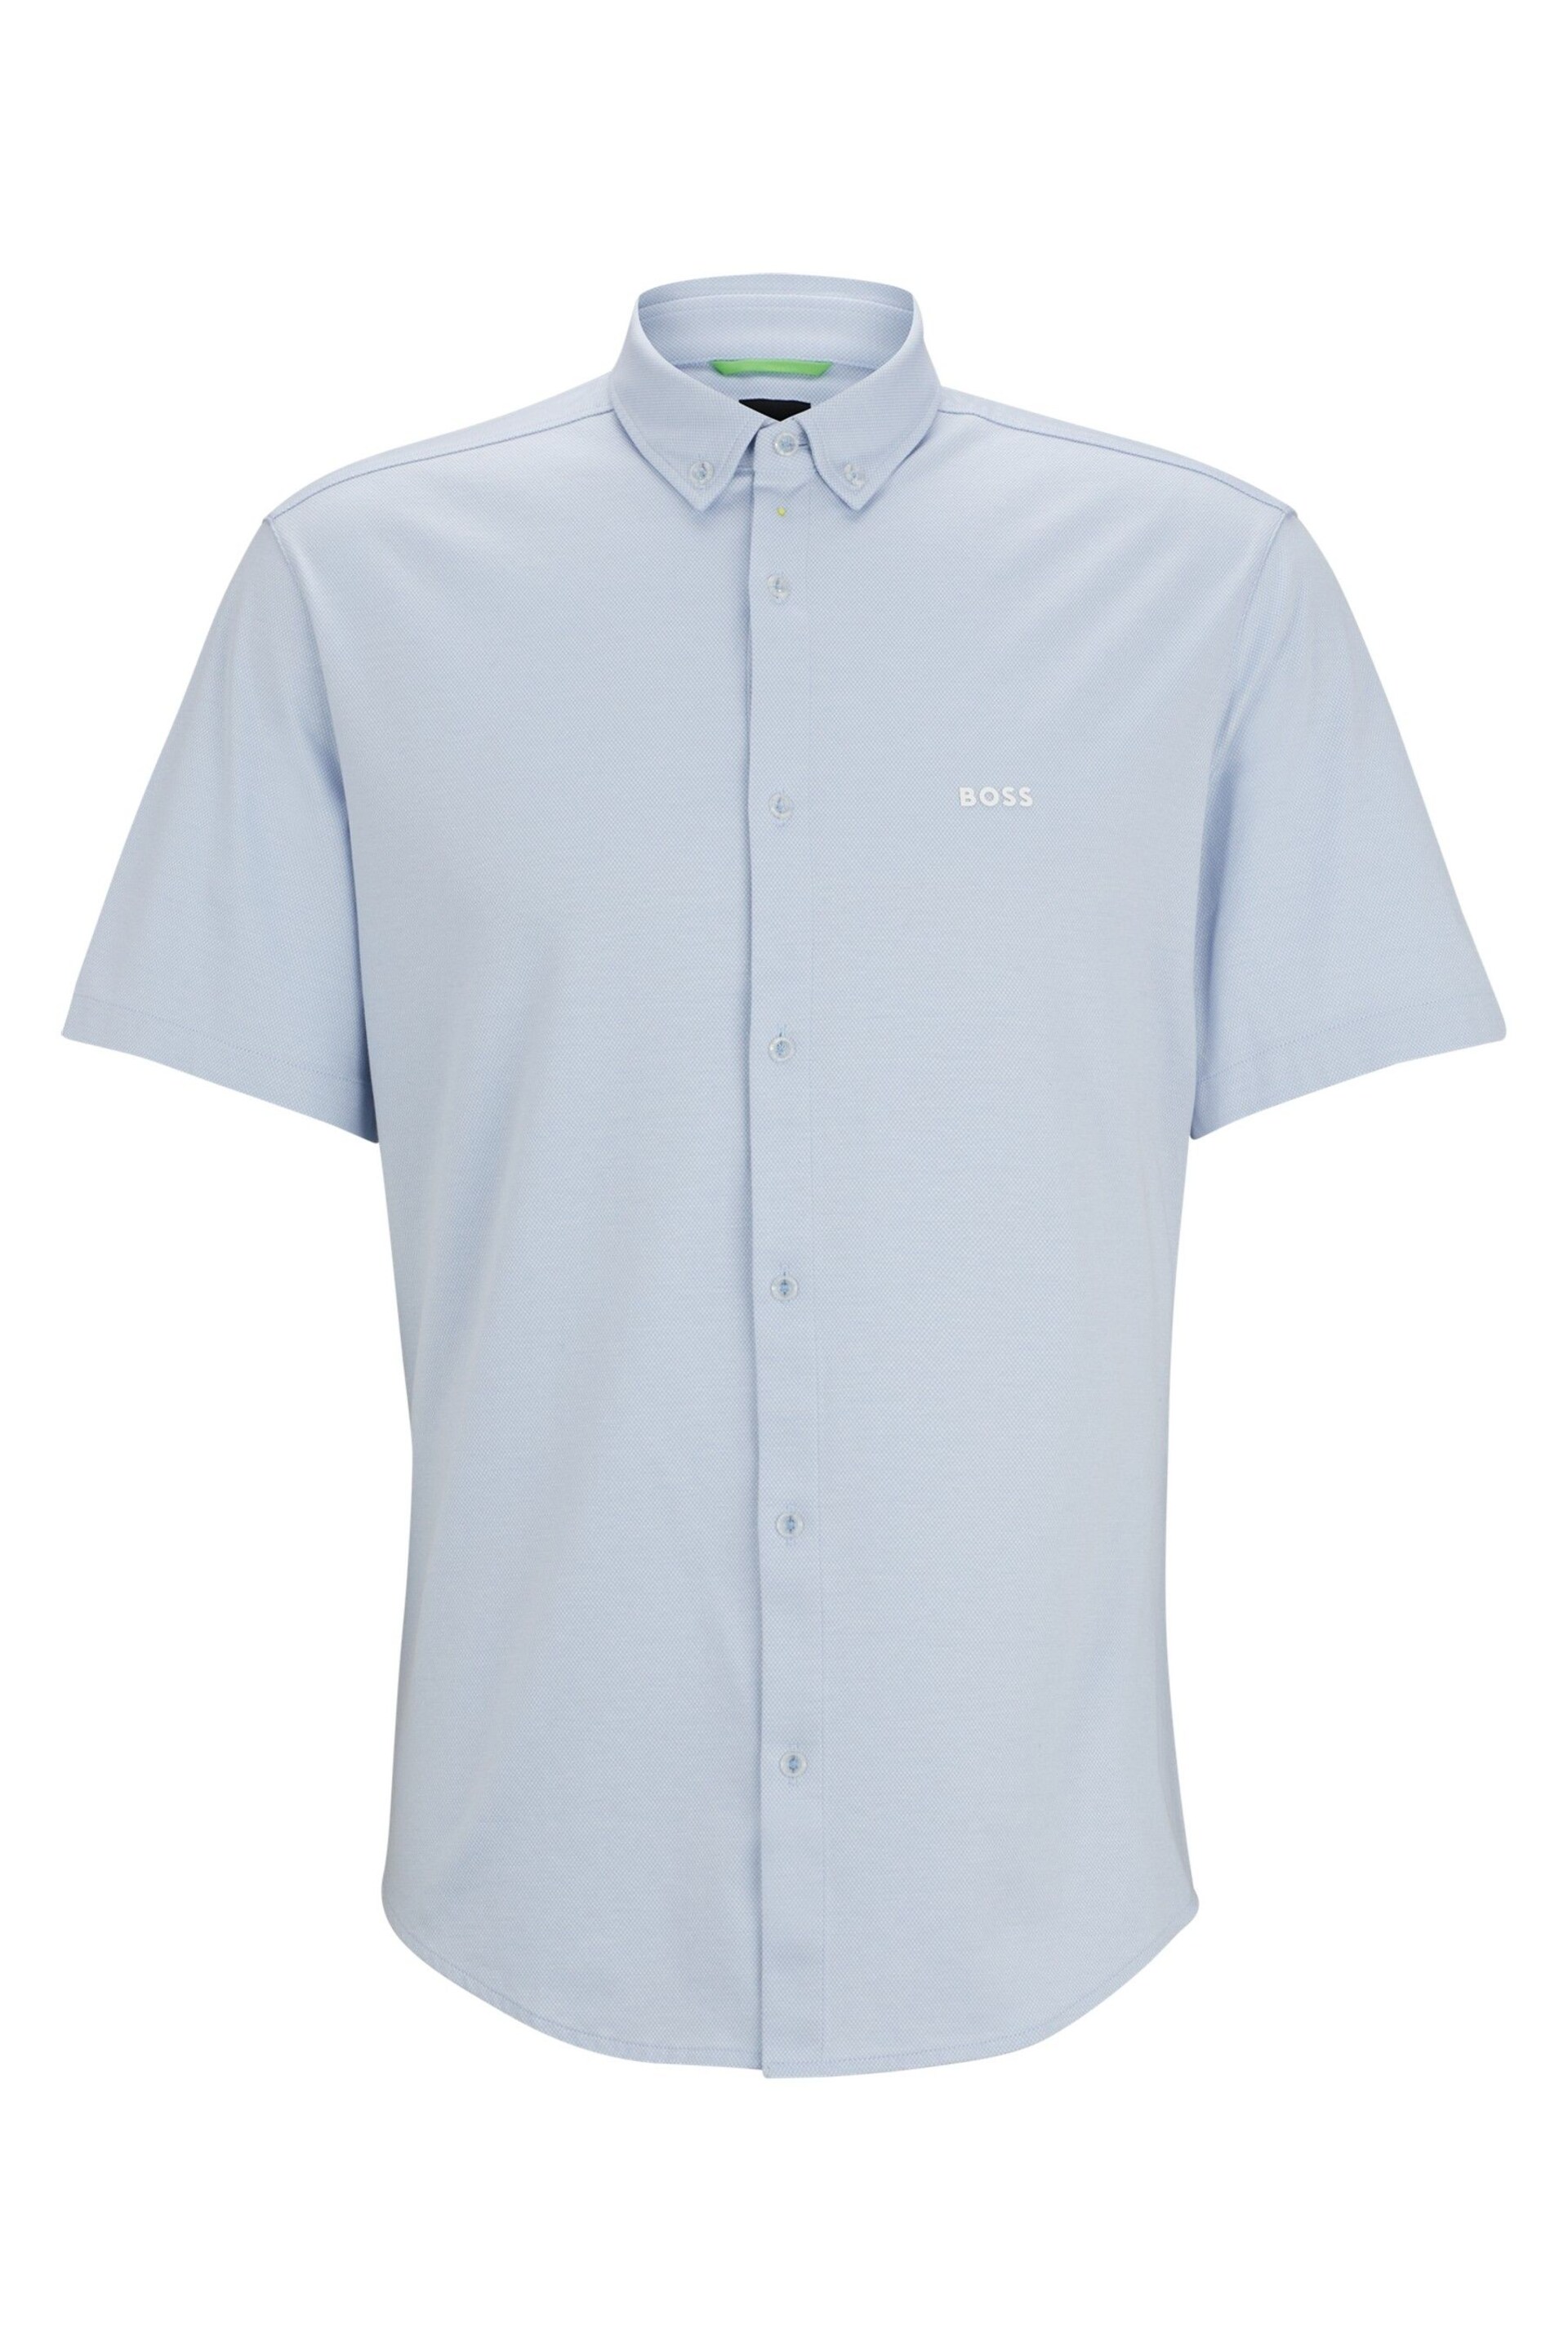 BOSS Light Blue Regular-Fit Shirt in Cotton Piqué Jersey - Image 7 of 7